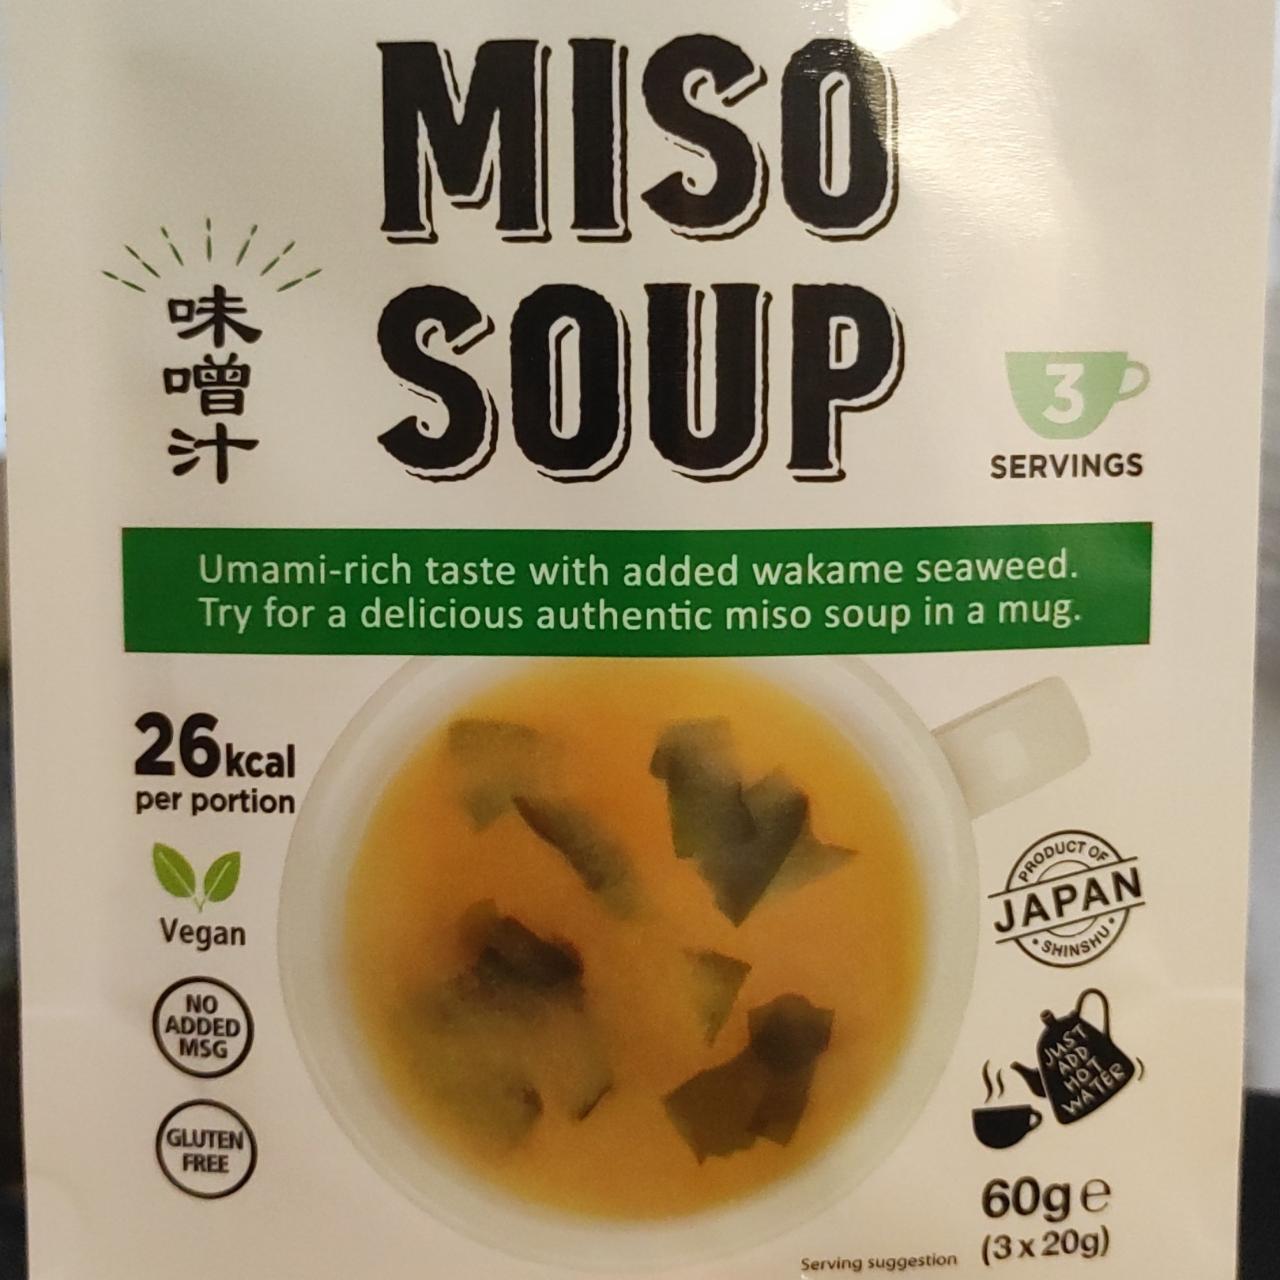 Фото - Місо-суп Miso Soup Hikari Miso